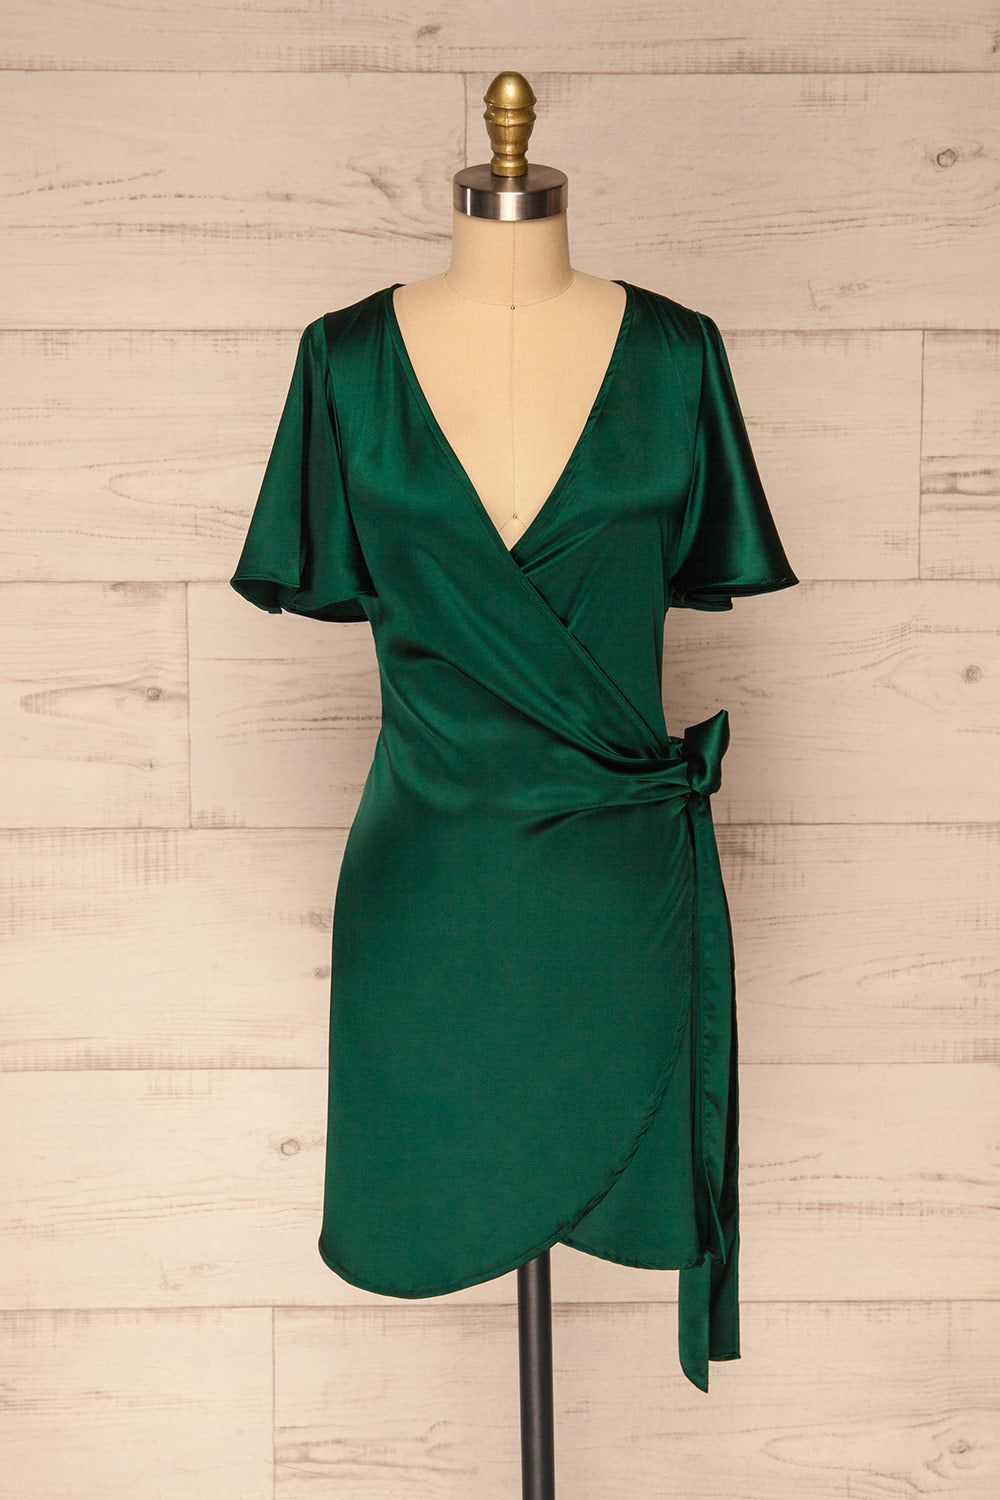 Fasano Green Short Silky Wrap Dress ...